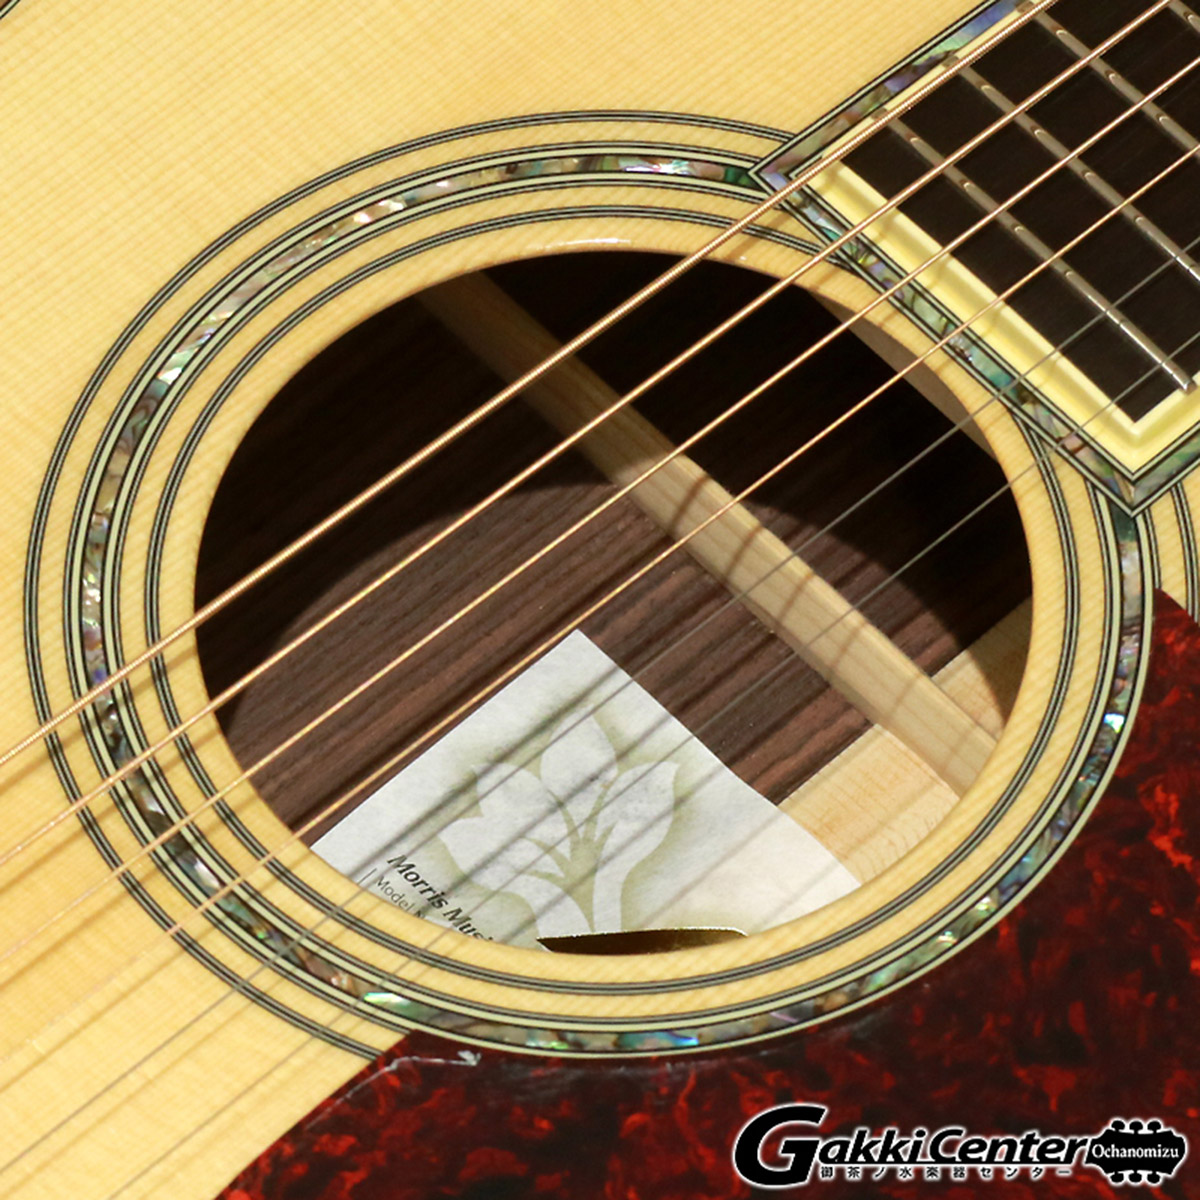 まとめ購入 MORRIS GUITARS ( モーリスギター ) F-145， Glossy Natural [S/N: 1822]